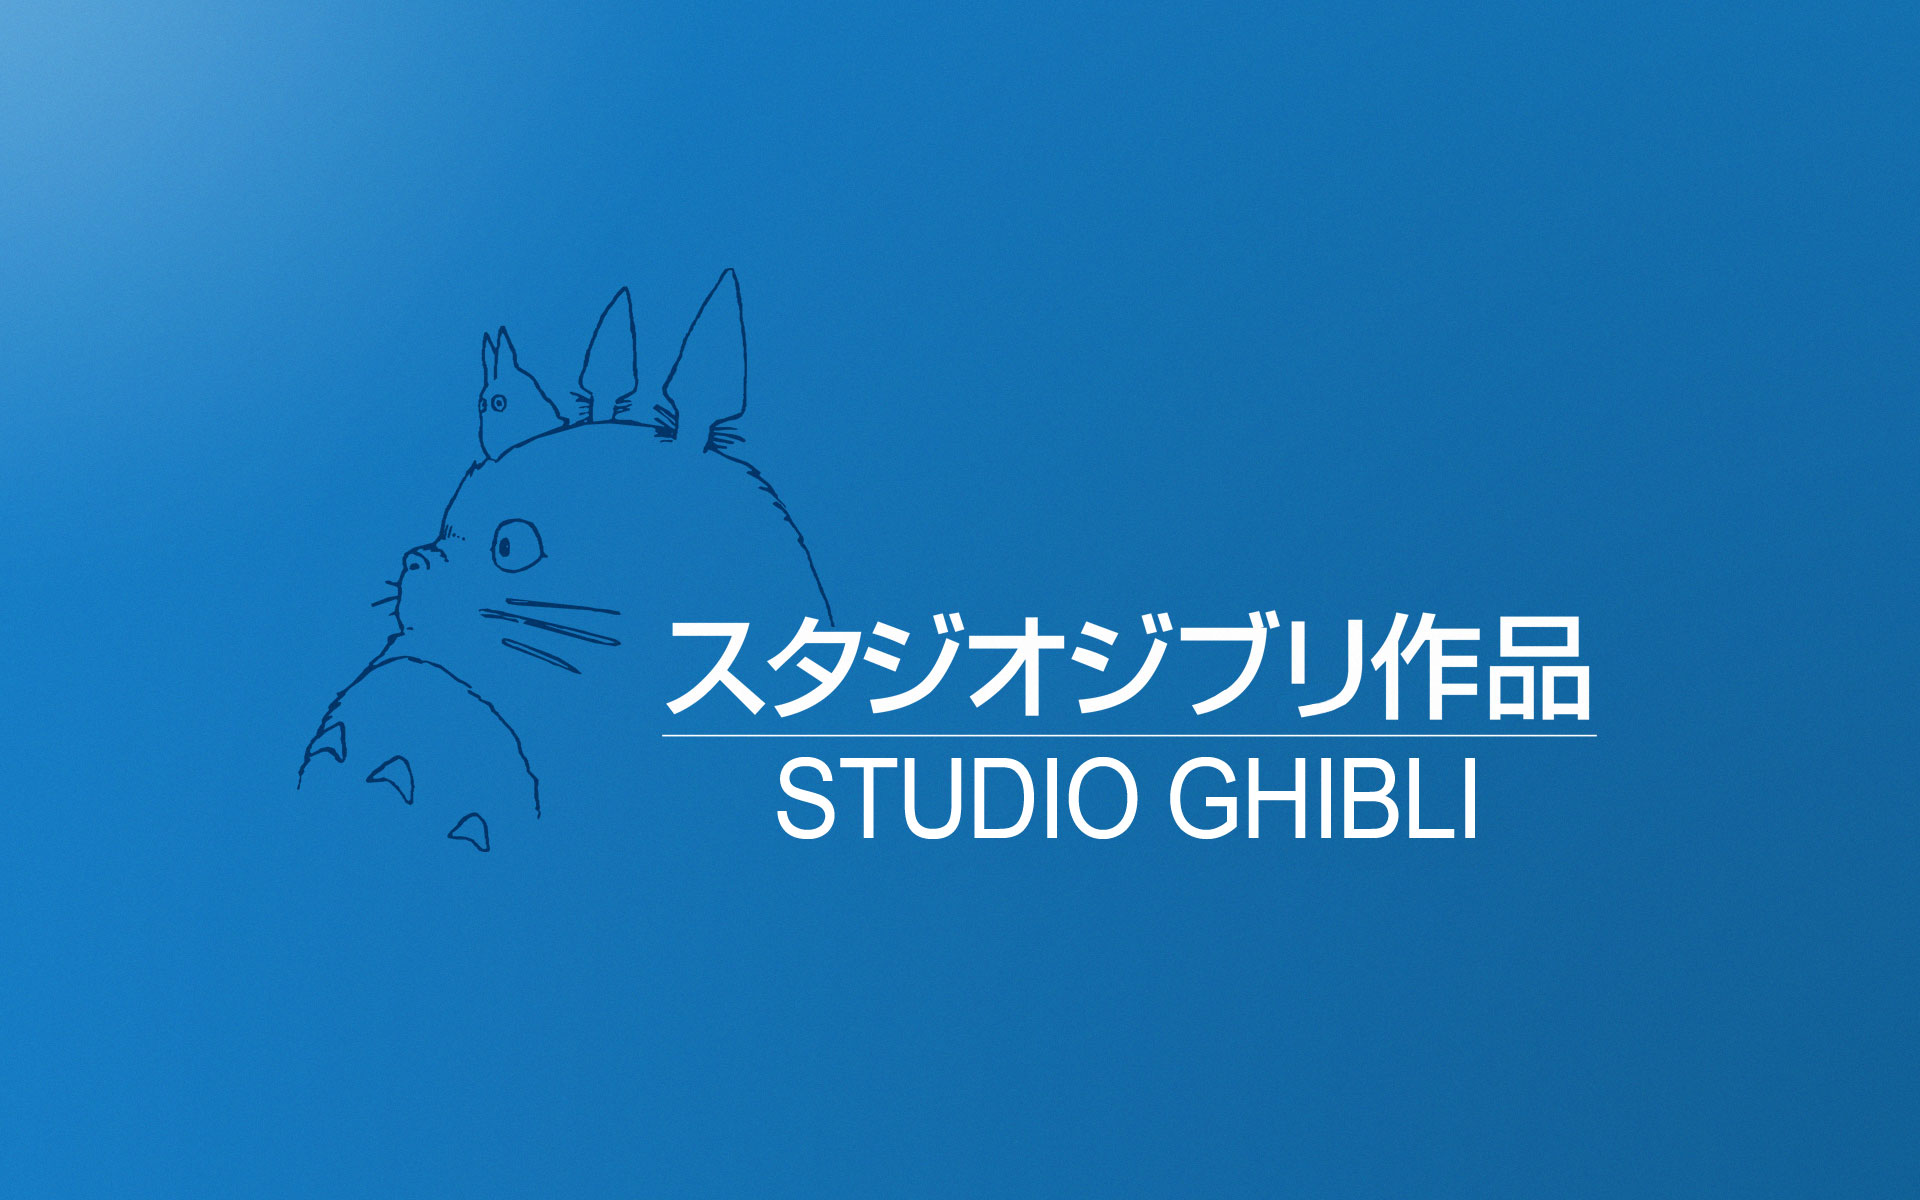 الطعام الشهي من استديو Ghibli يصبح واقعاَ.